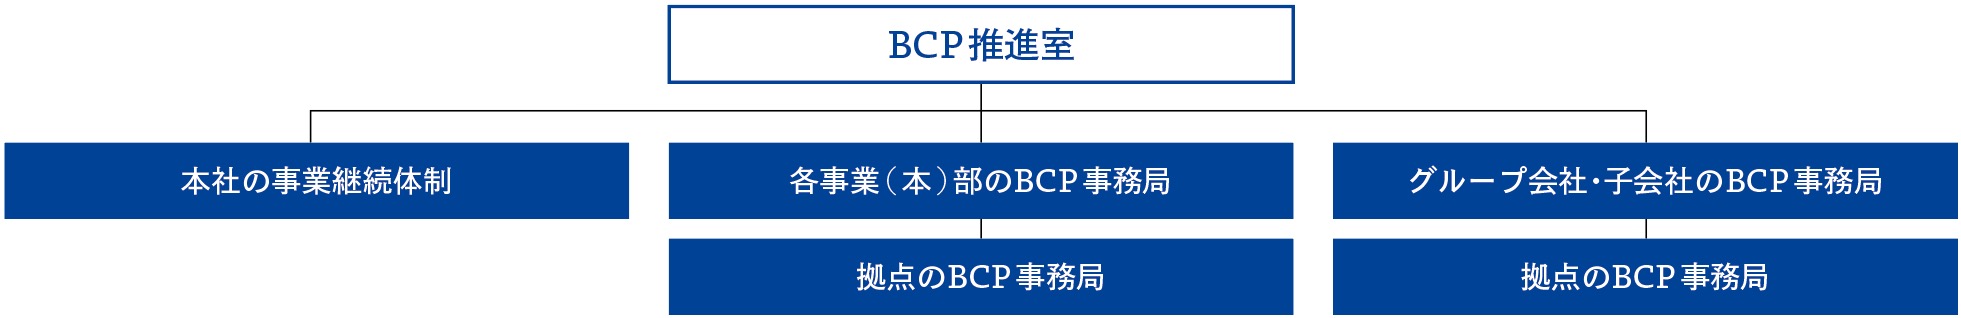 TOPPANグループのBCP推進体制